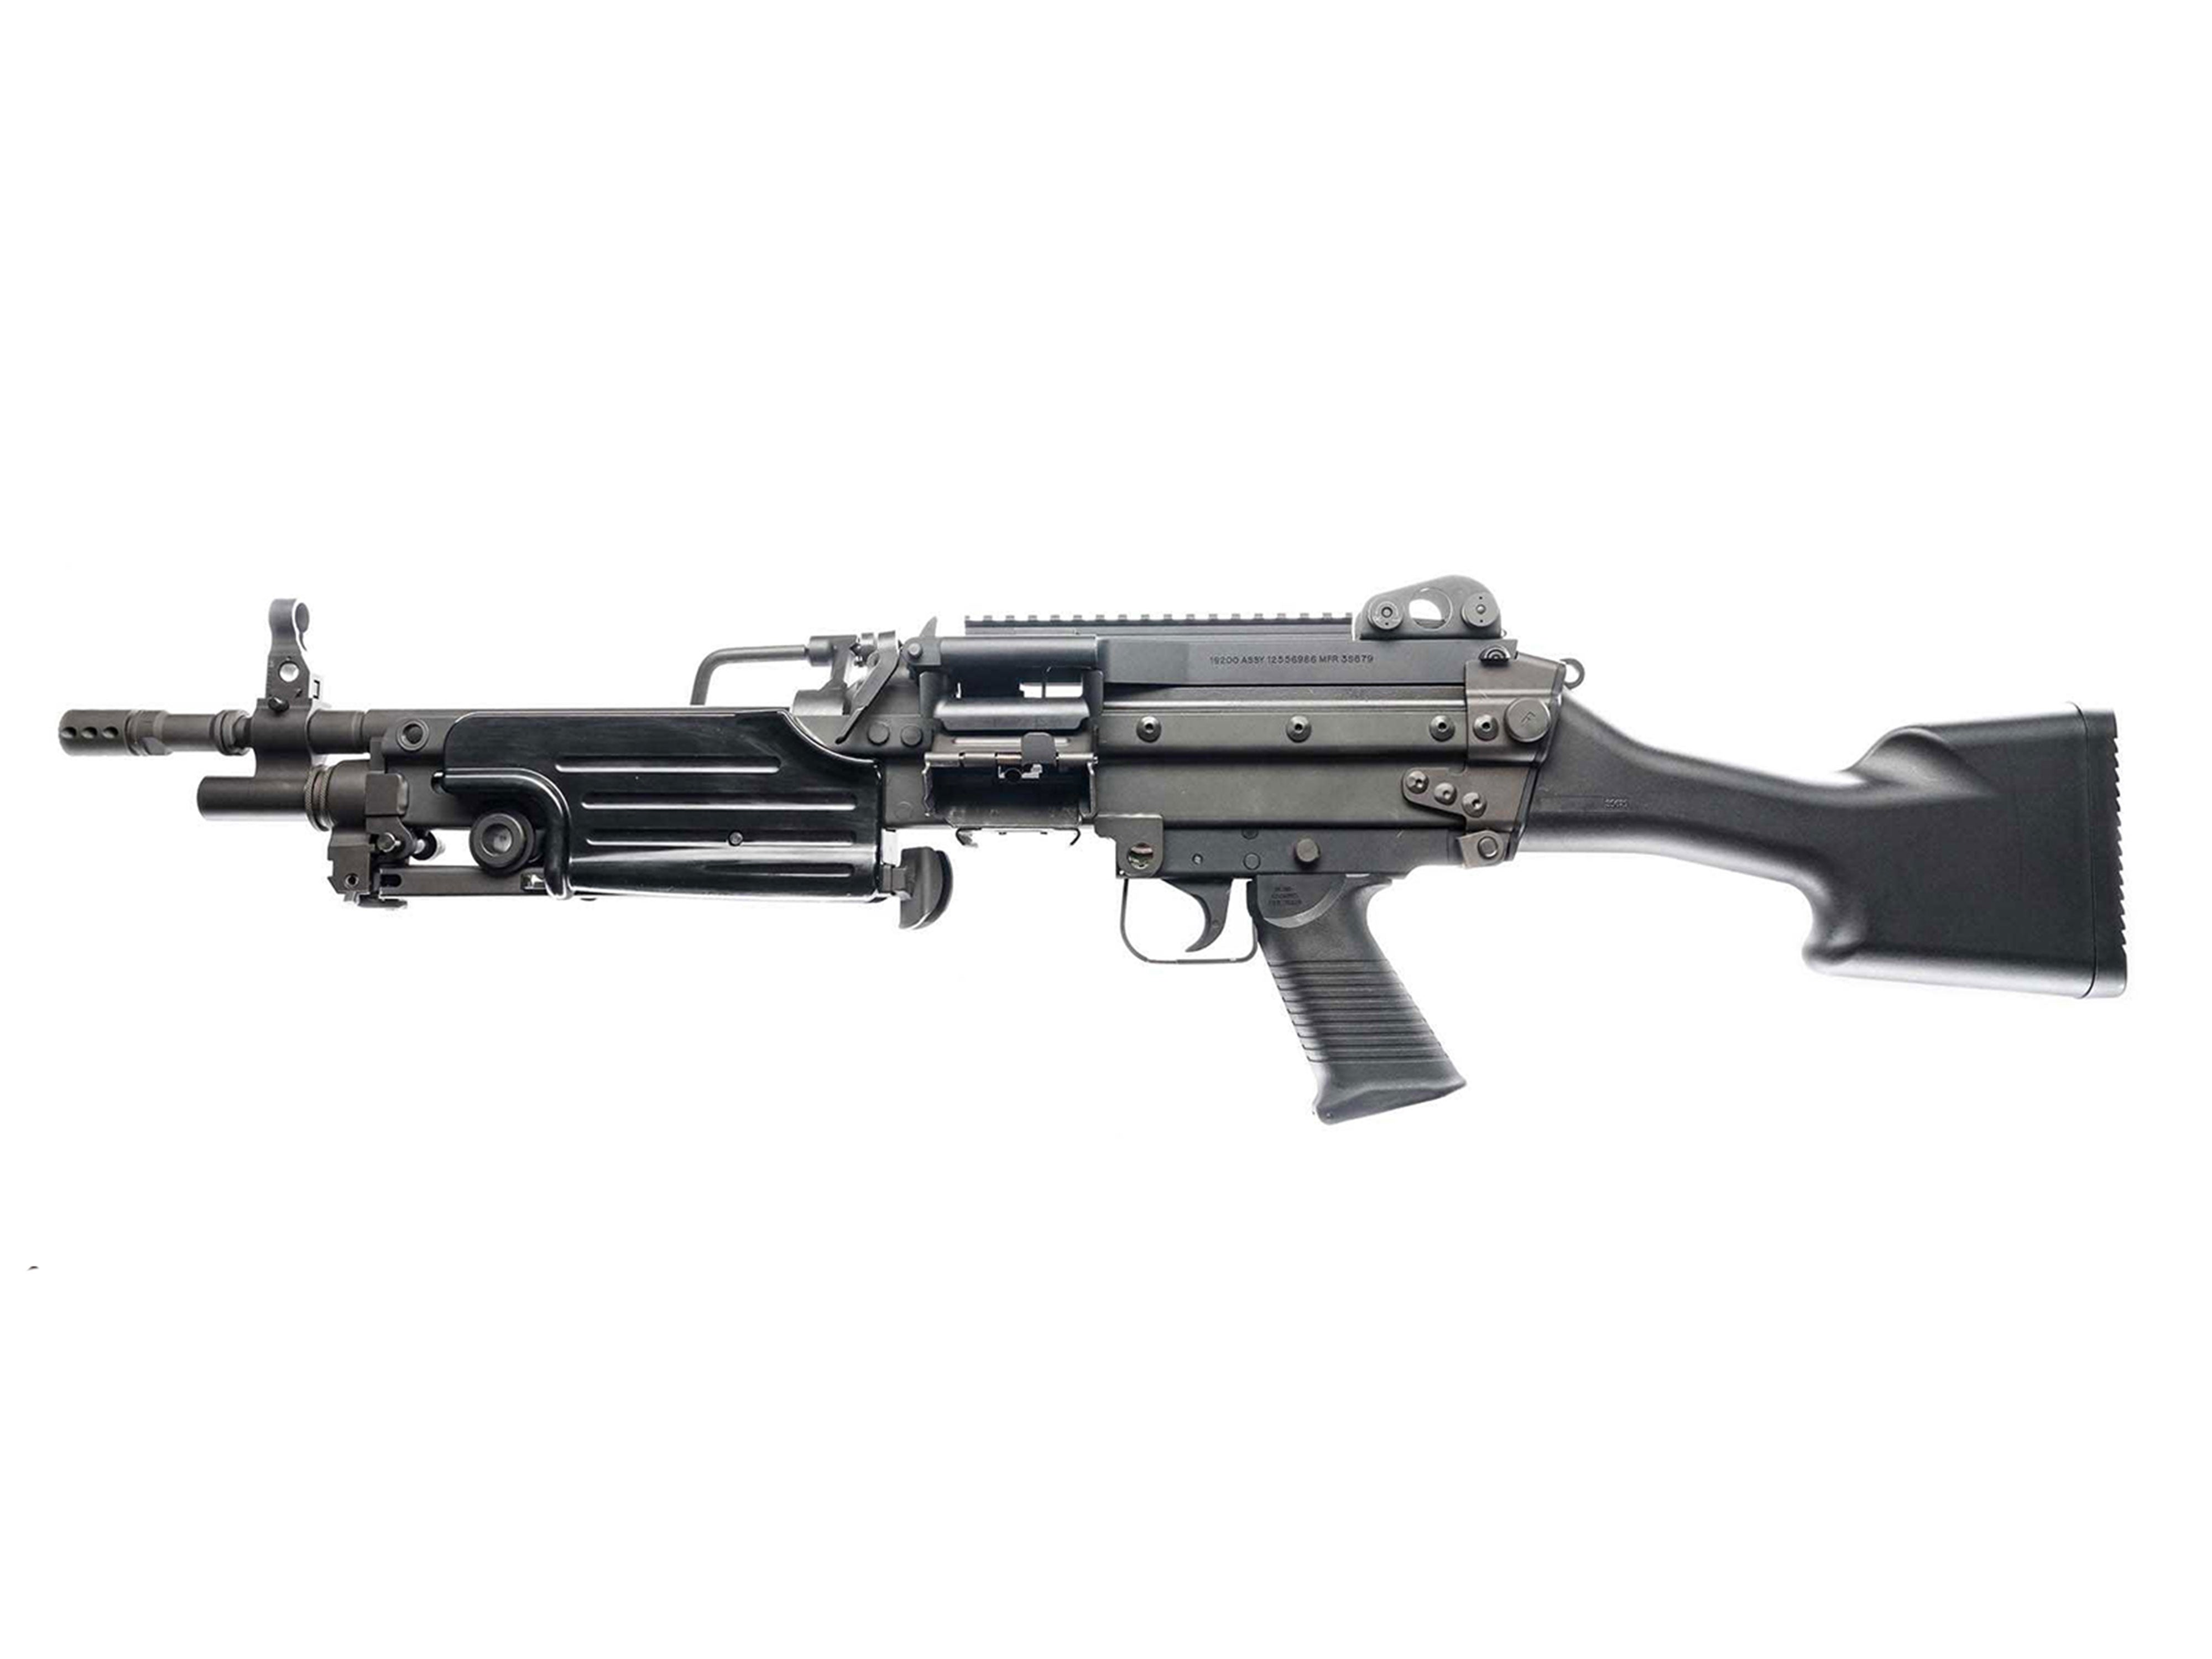 6652】A&K製 FN M249A1 MINIMI フルメタル電動ガン LMG 軽機関銃 